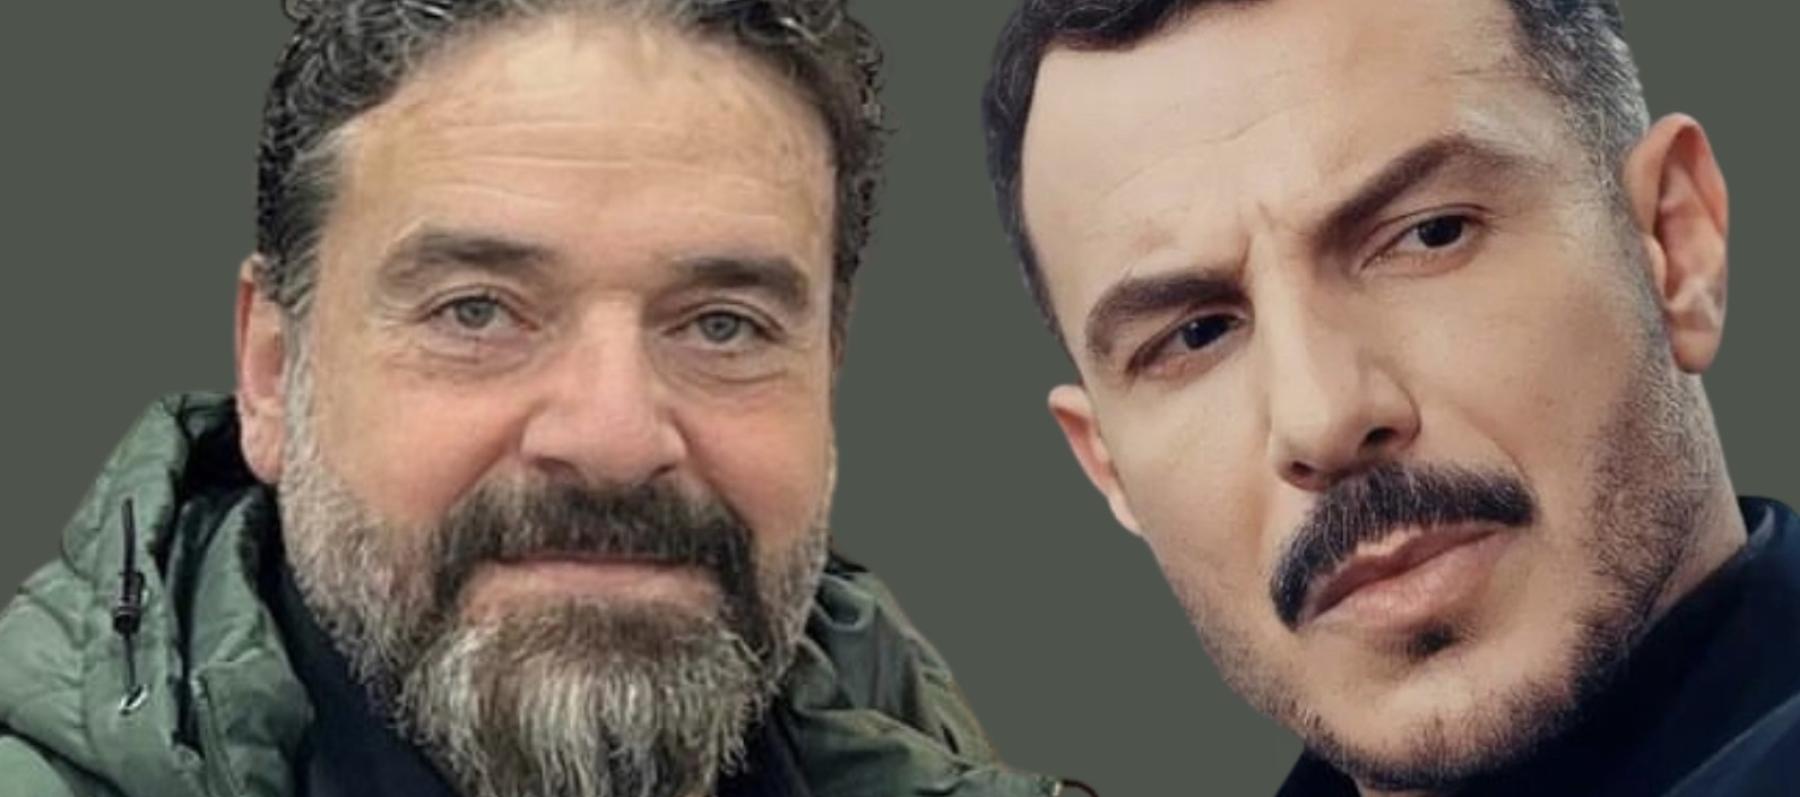 ما سر العلاقة بين ماهر صليبي و باسل خياط في مسلسل " الثمن "